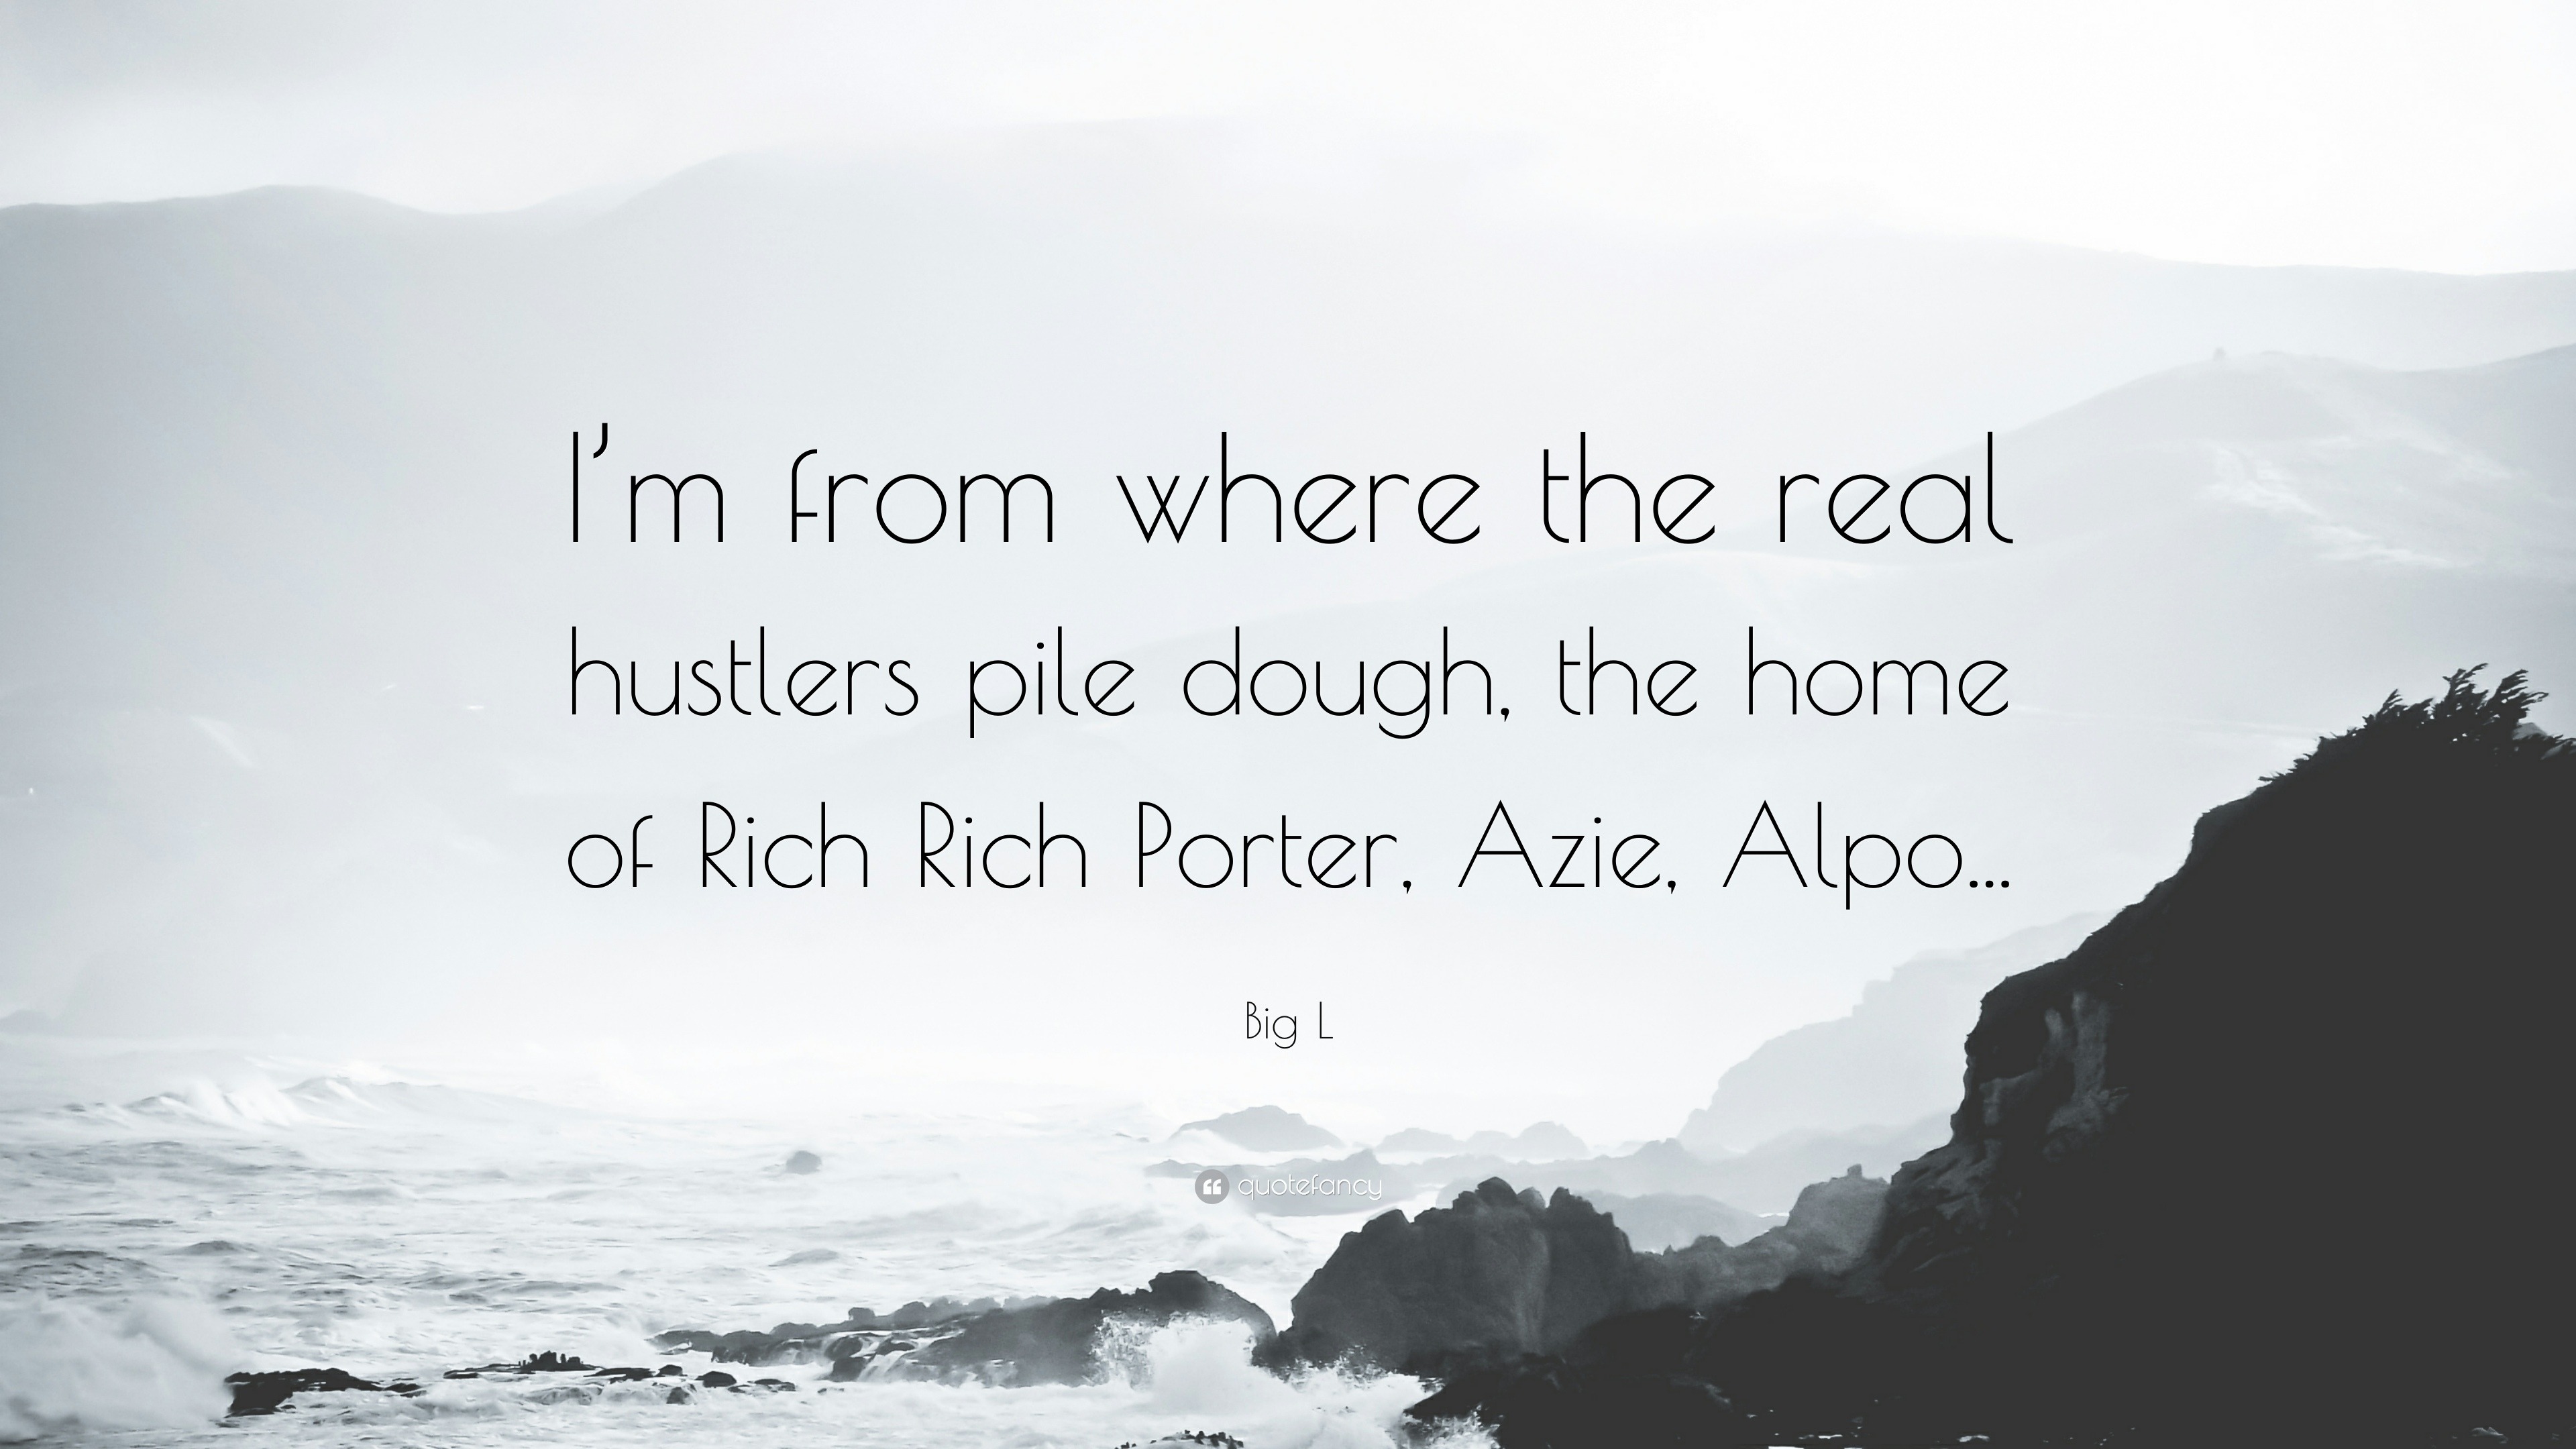 alpo and rich porter